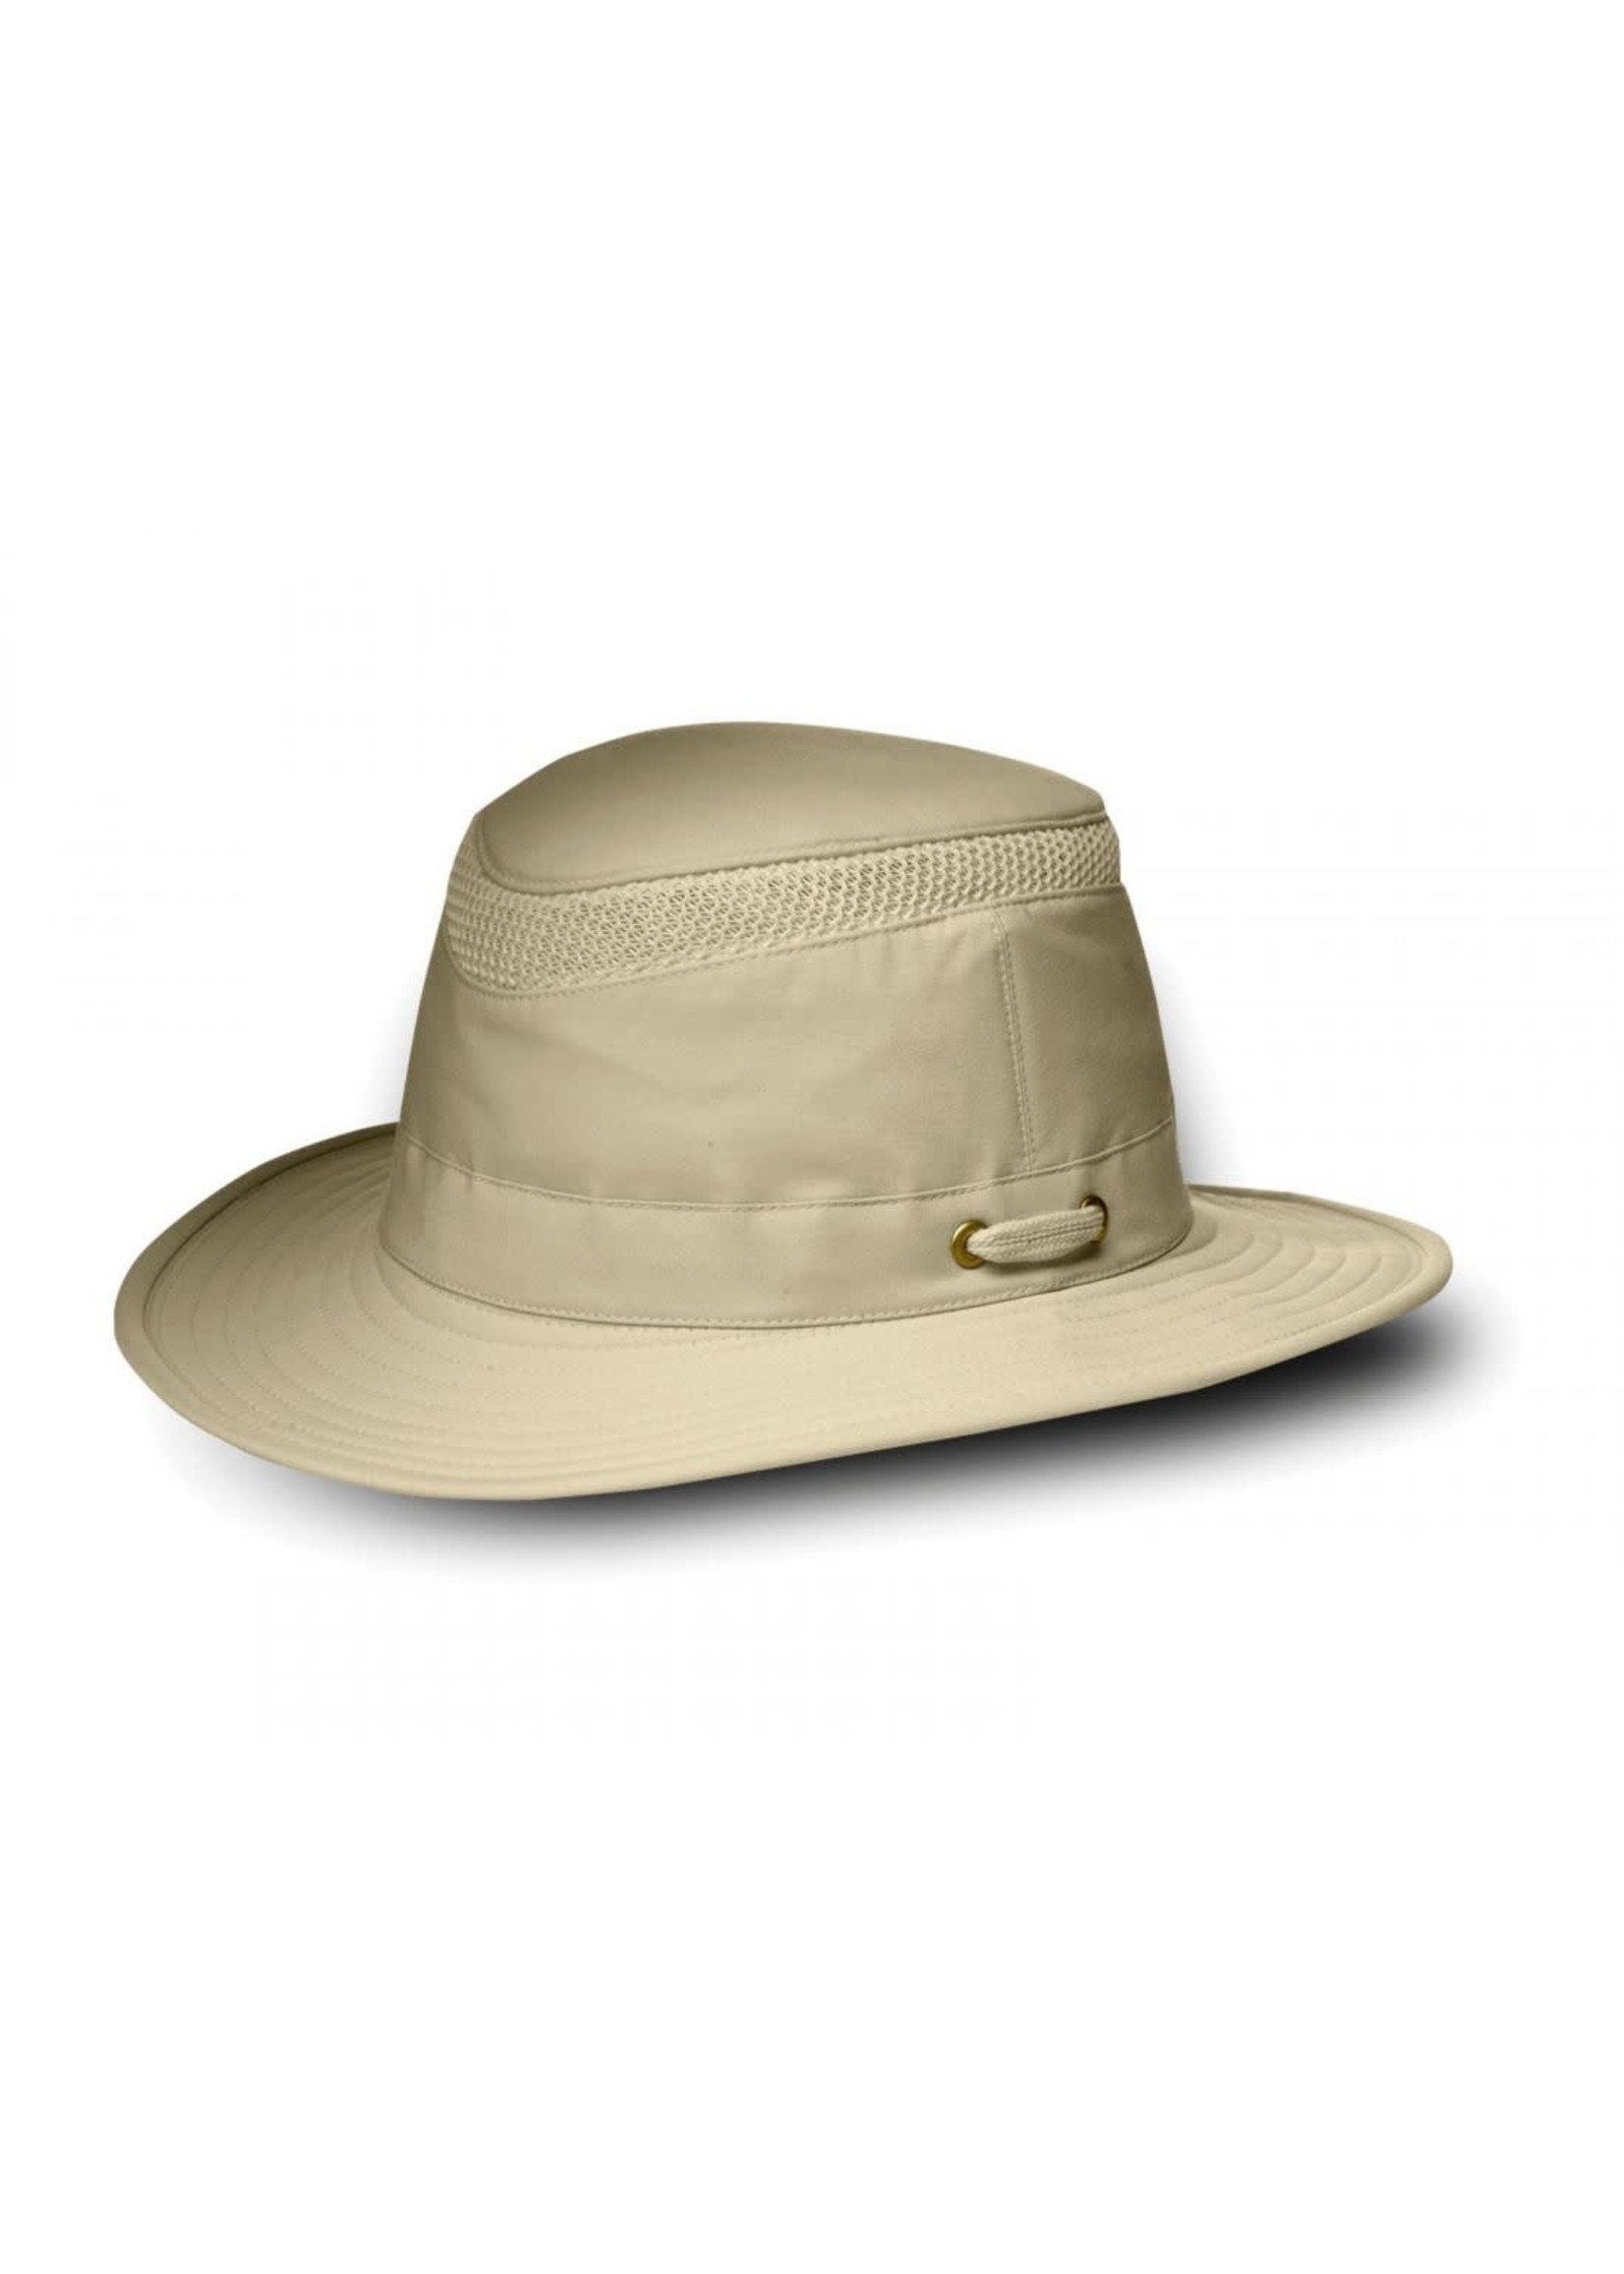 LTM 5 Airflow Hat Khaki Olive